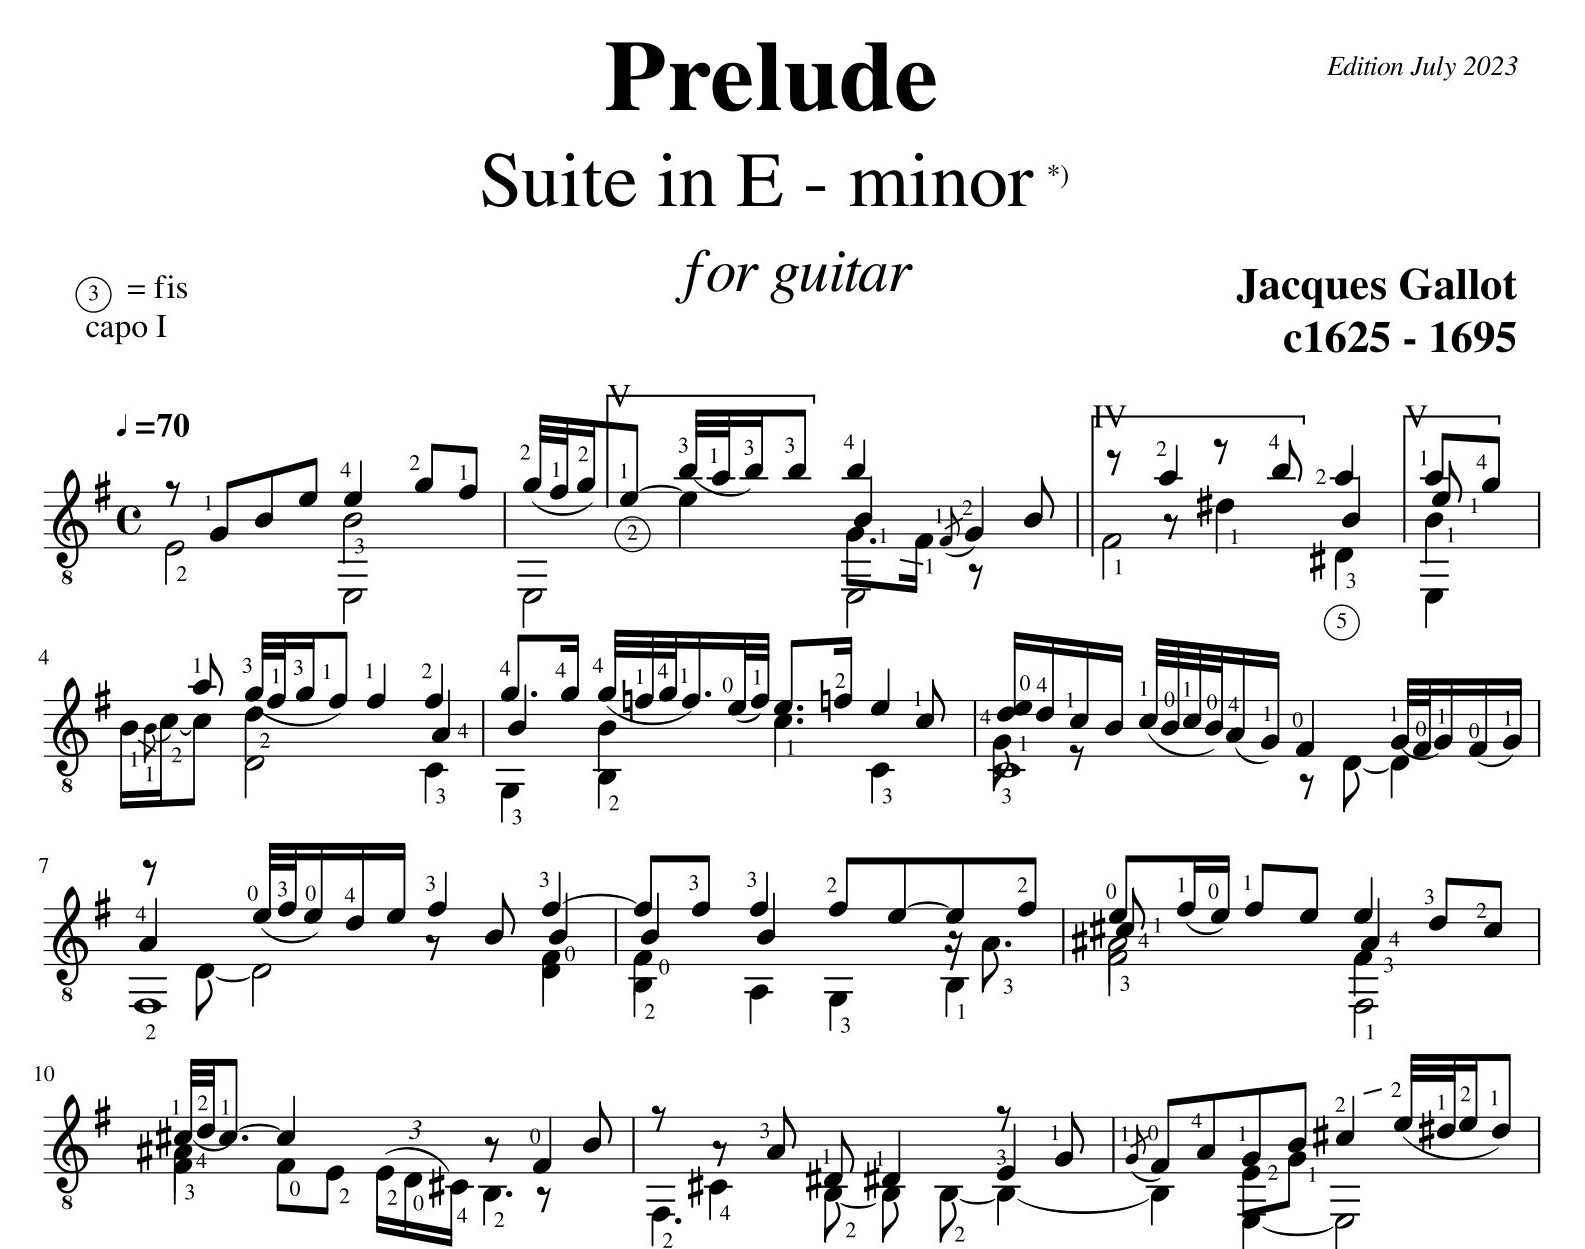 Jacques Gallot Prelude Suite in E minor